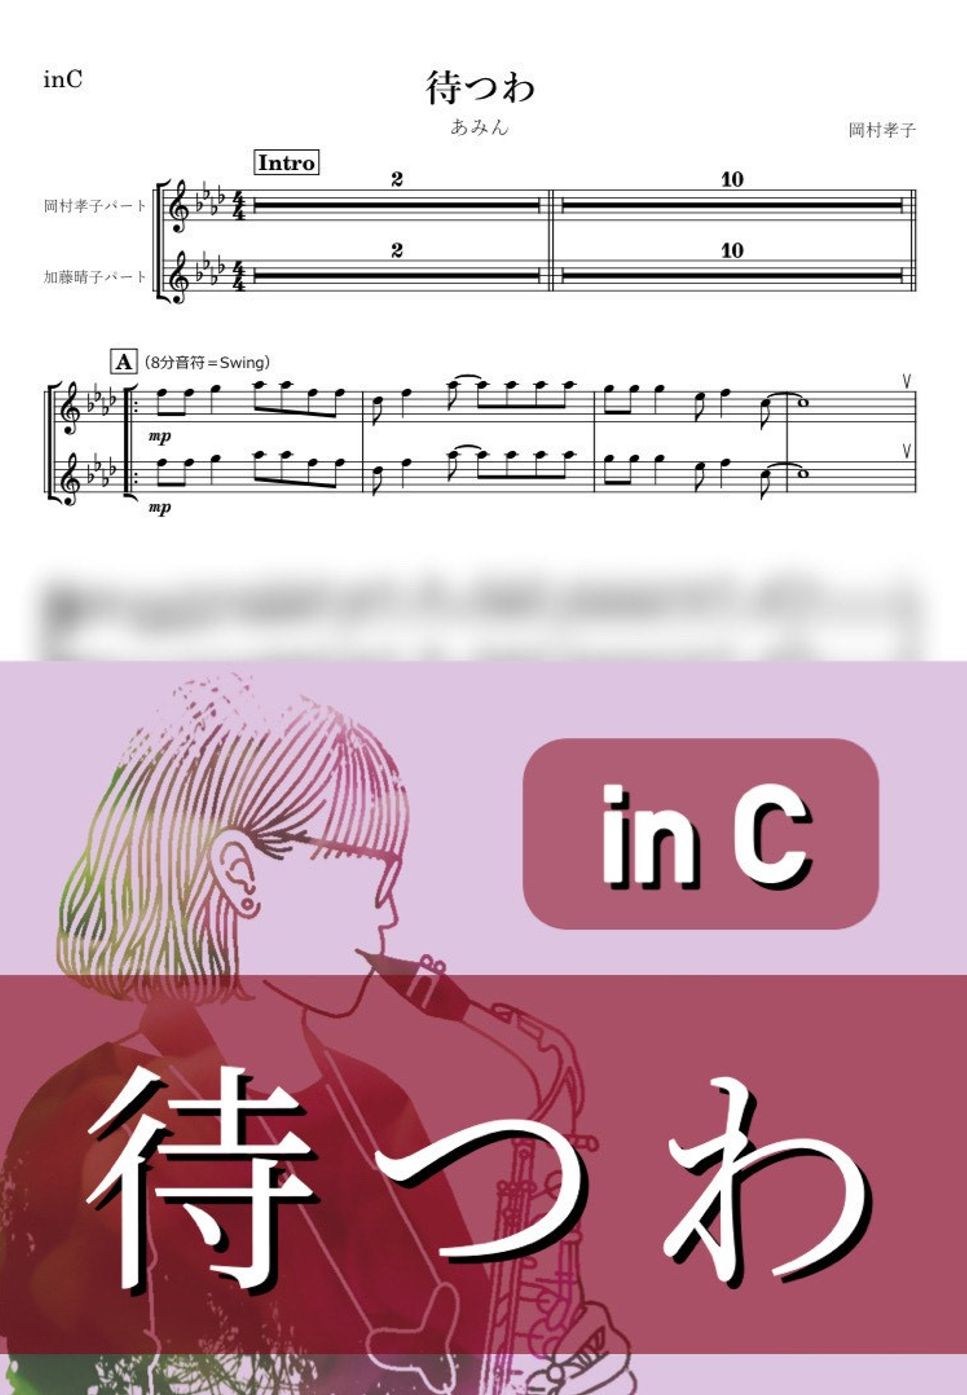 あみん - 待つわ (C) by kanamusic